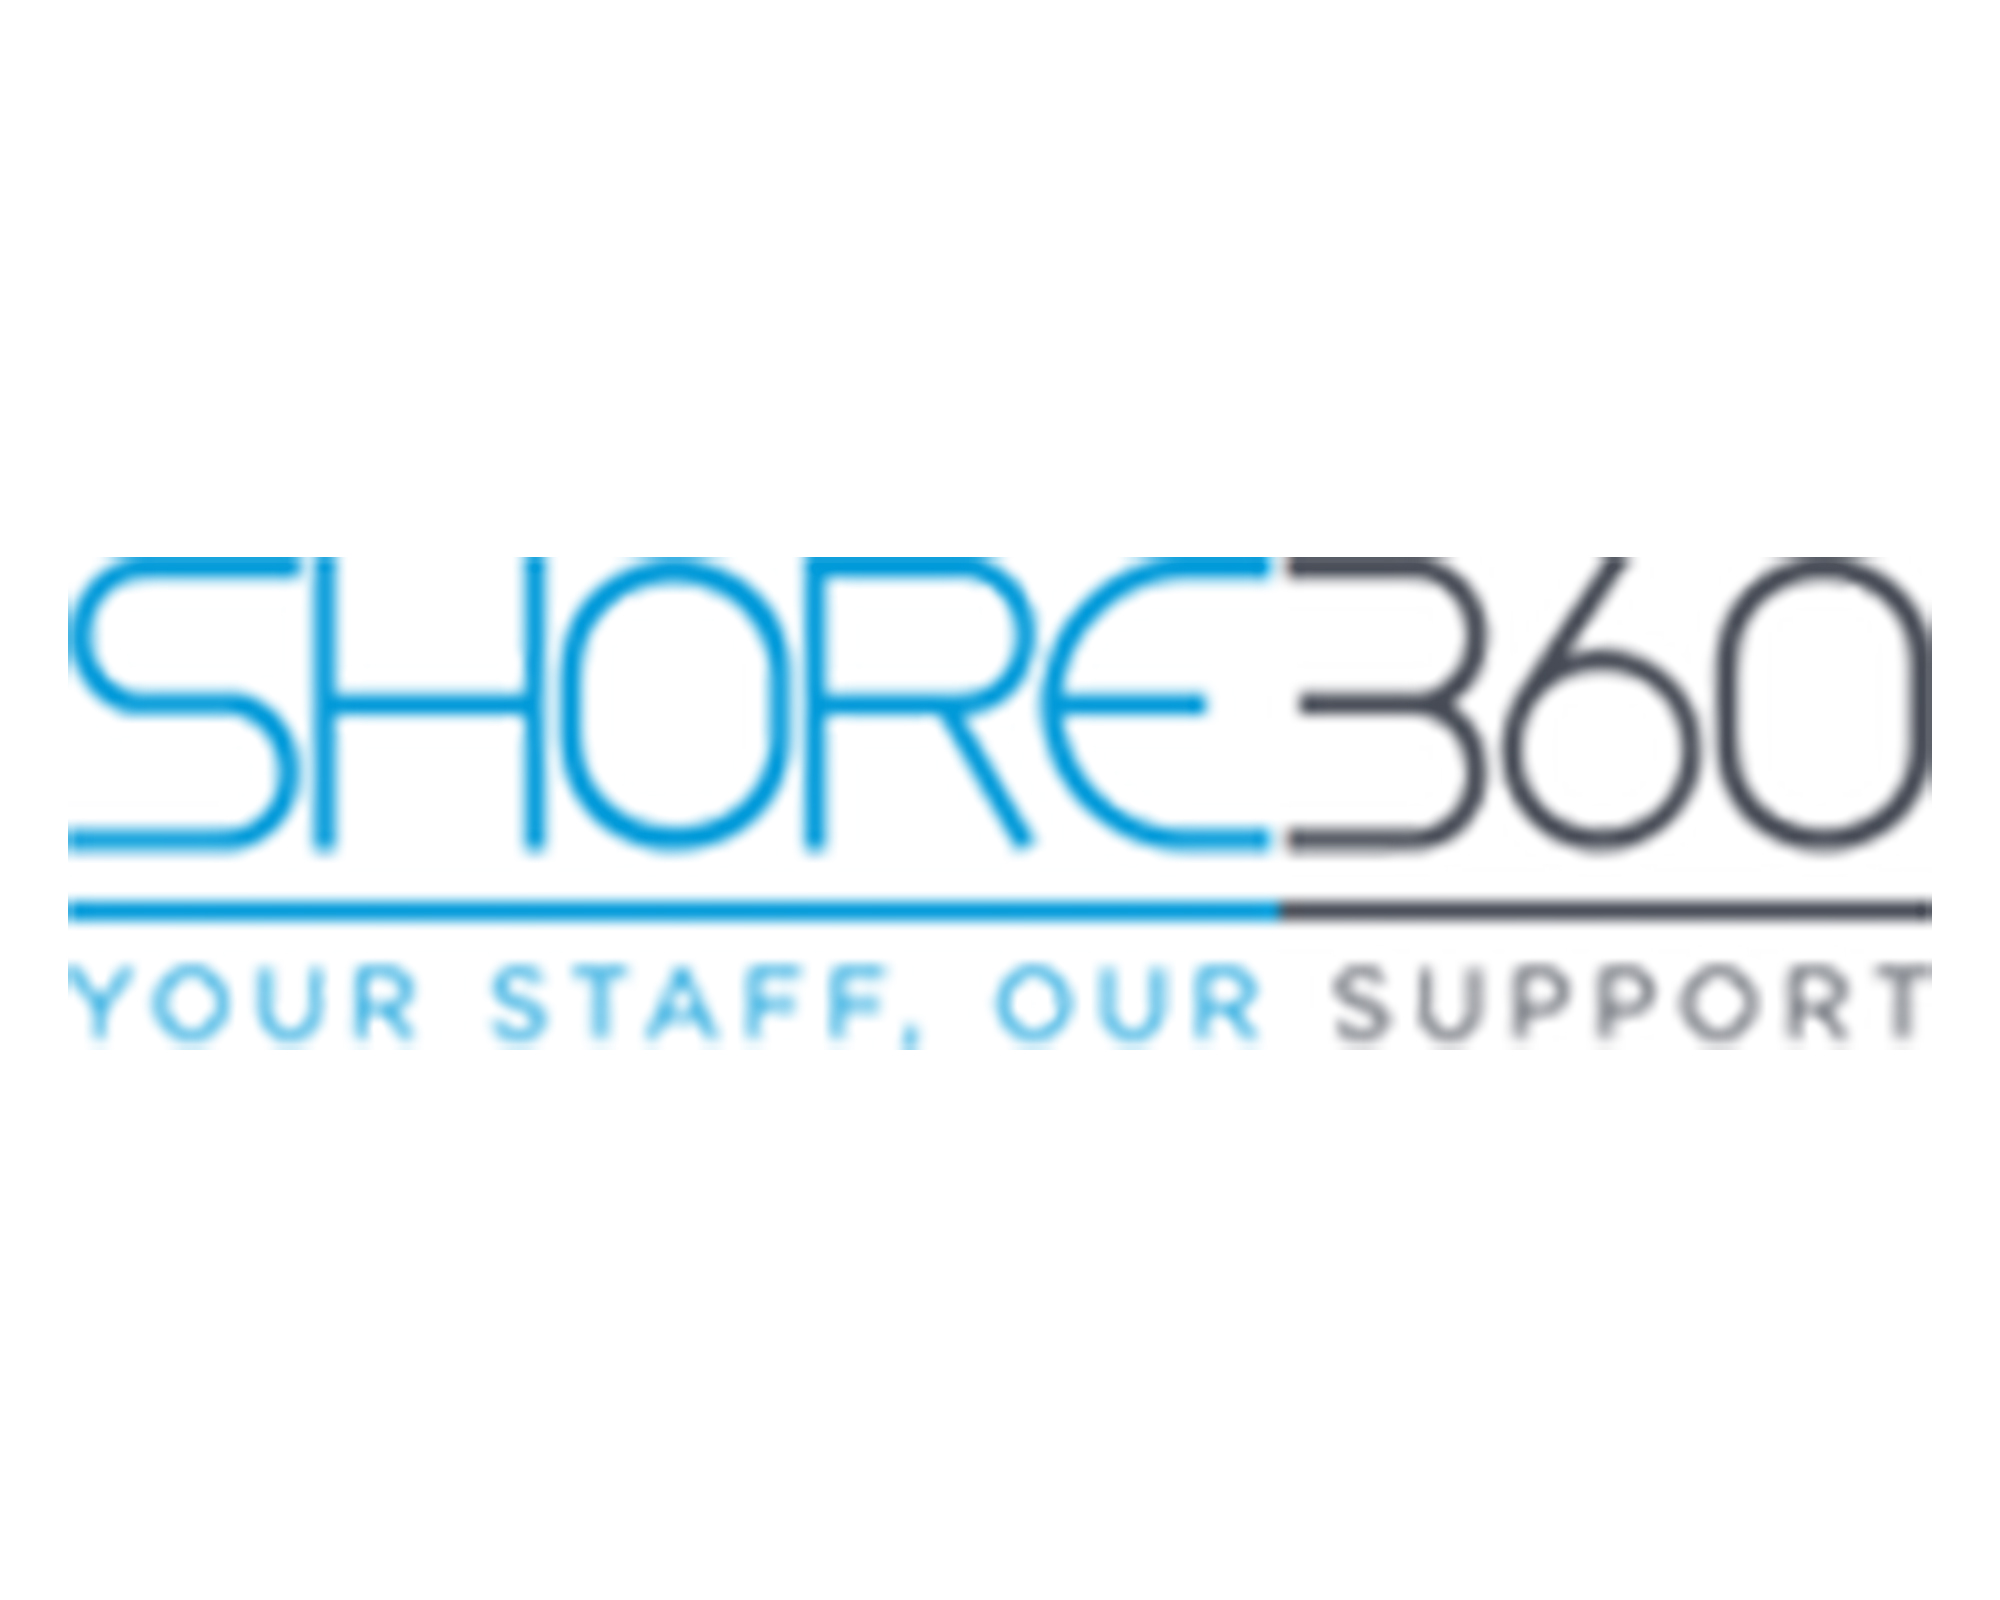 Shore360